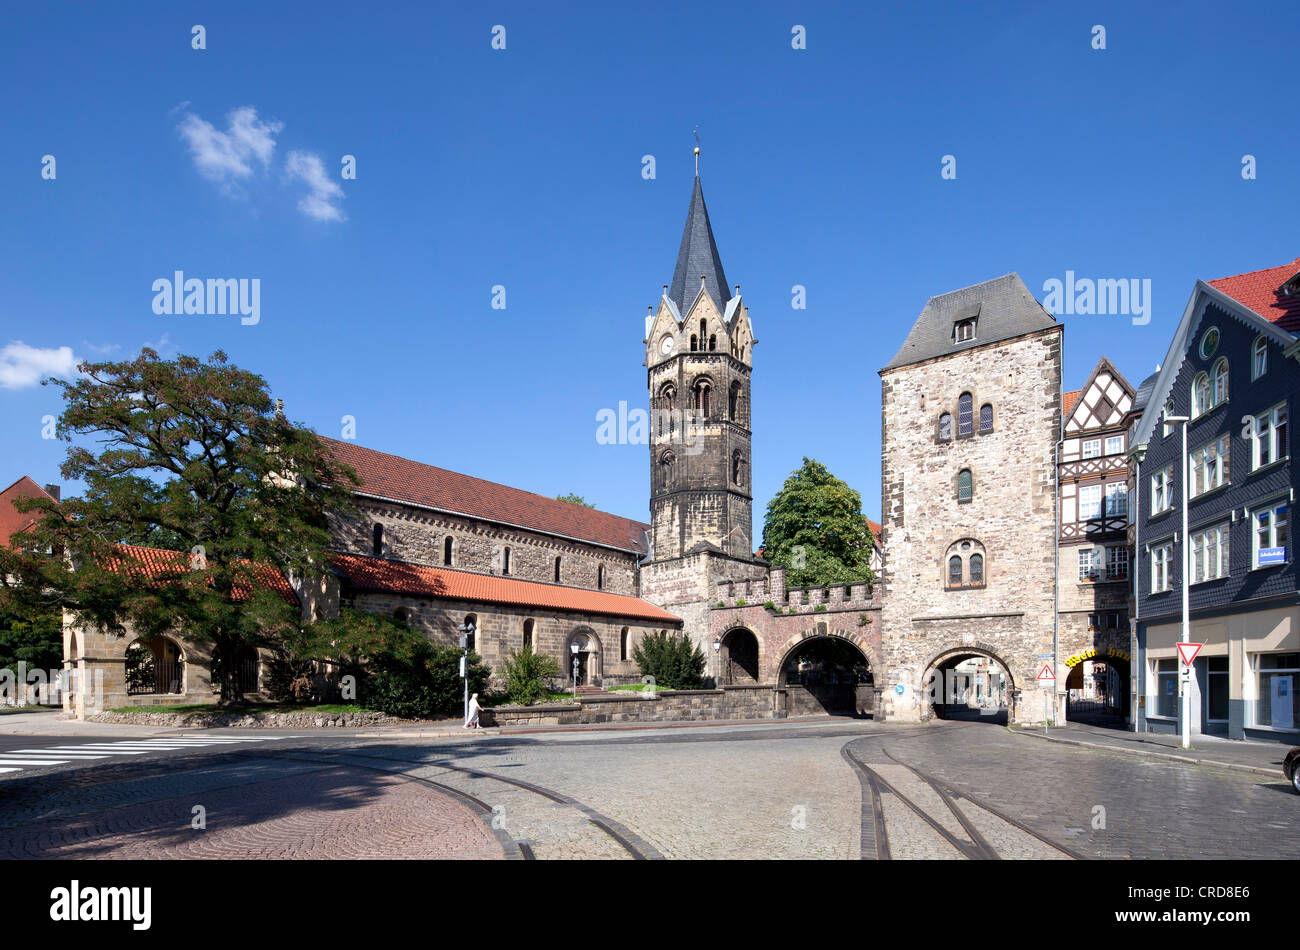 Nikolaikirche church, Nikolaitor, a medieval city gate, Karlsplatz square, Eisenach, Thuringia, Germany, Europe, PublicGround Stock Photo